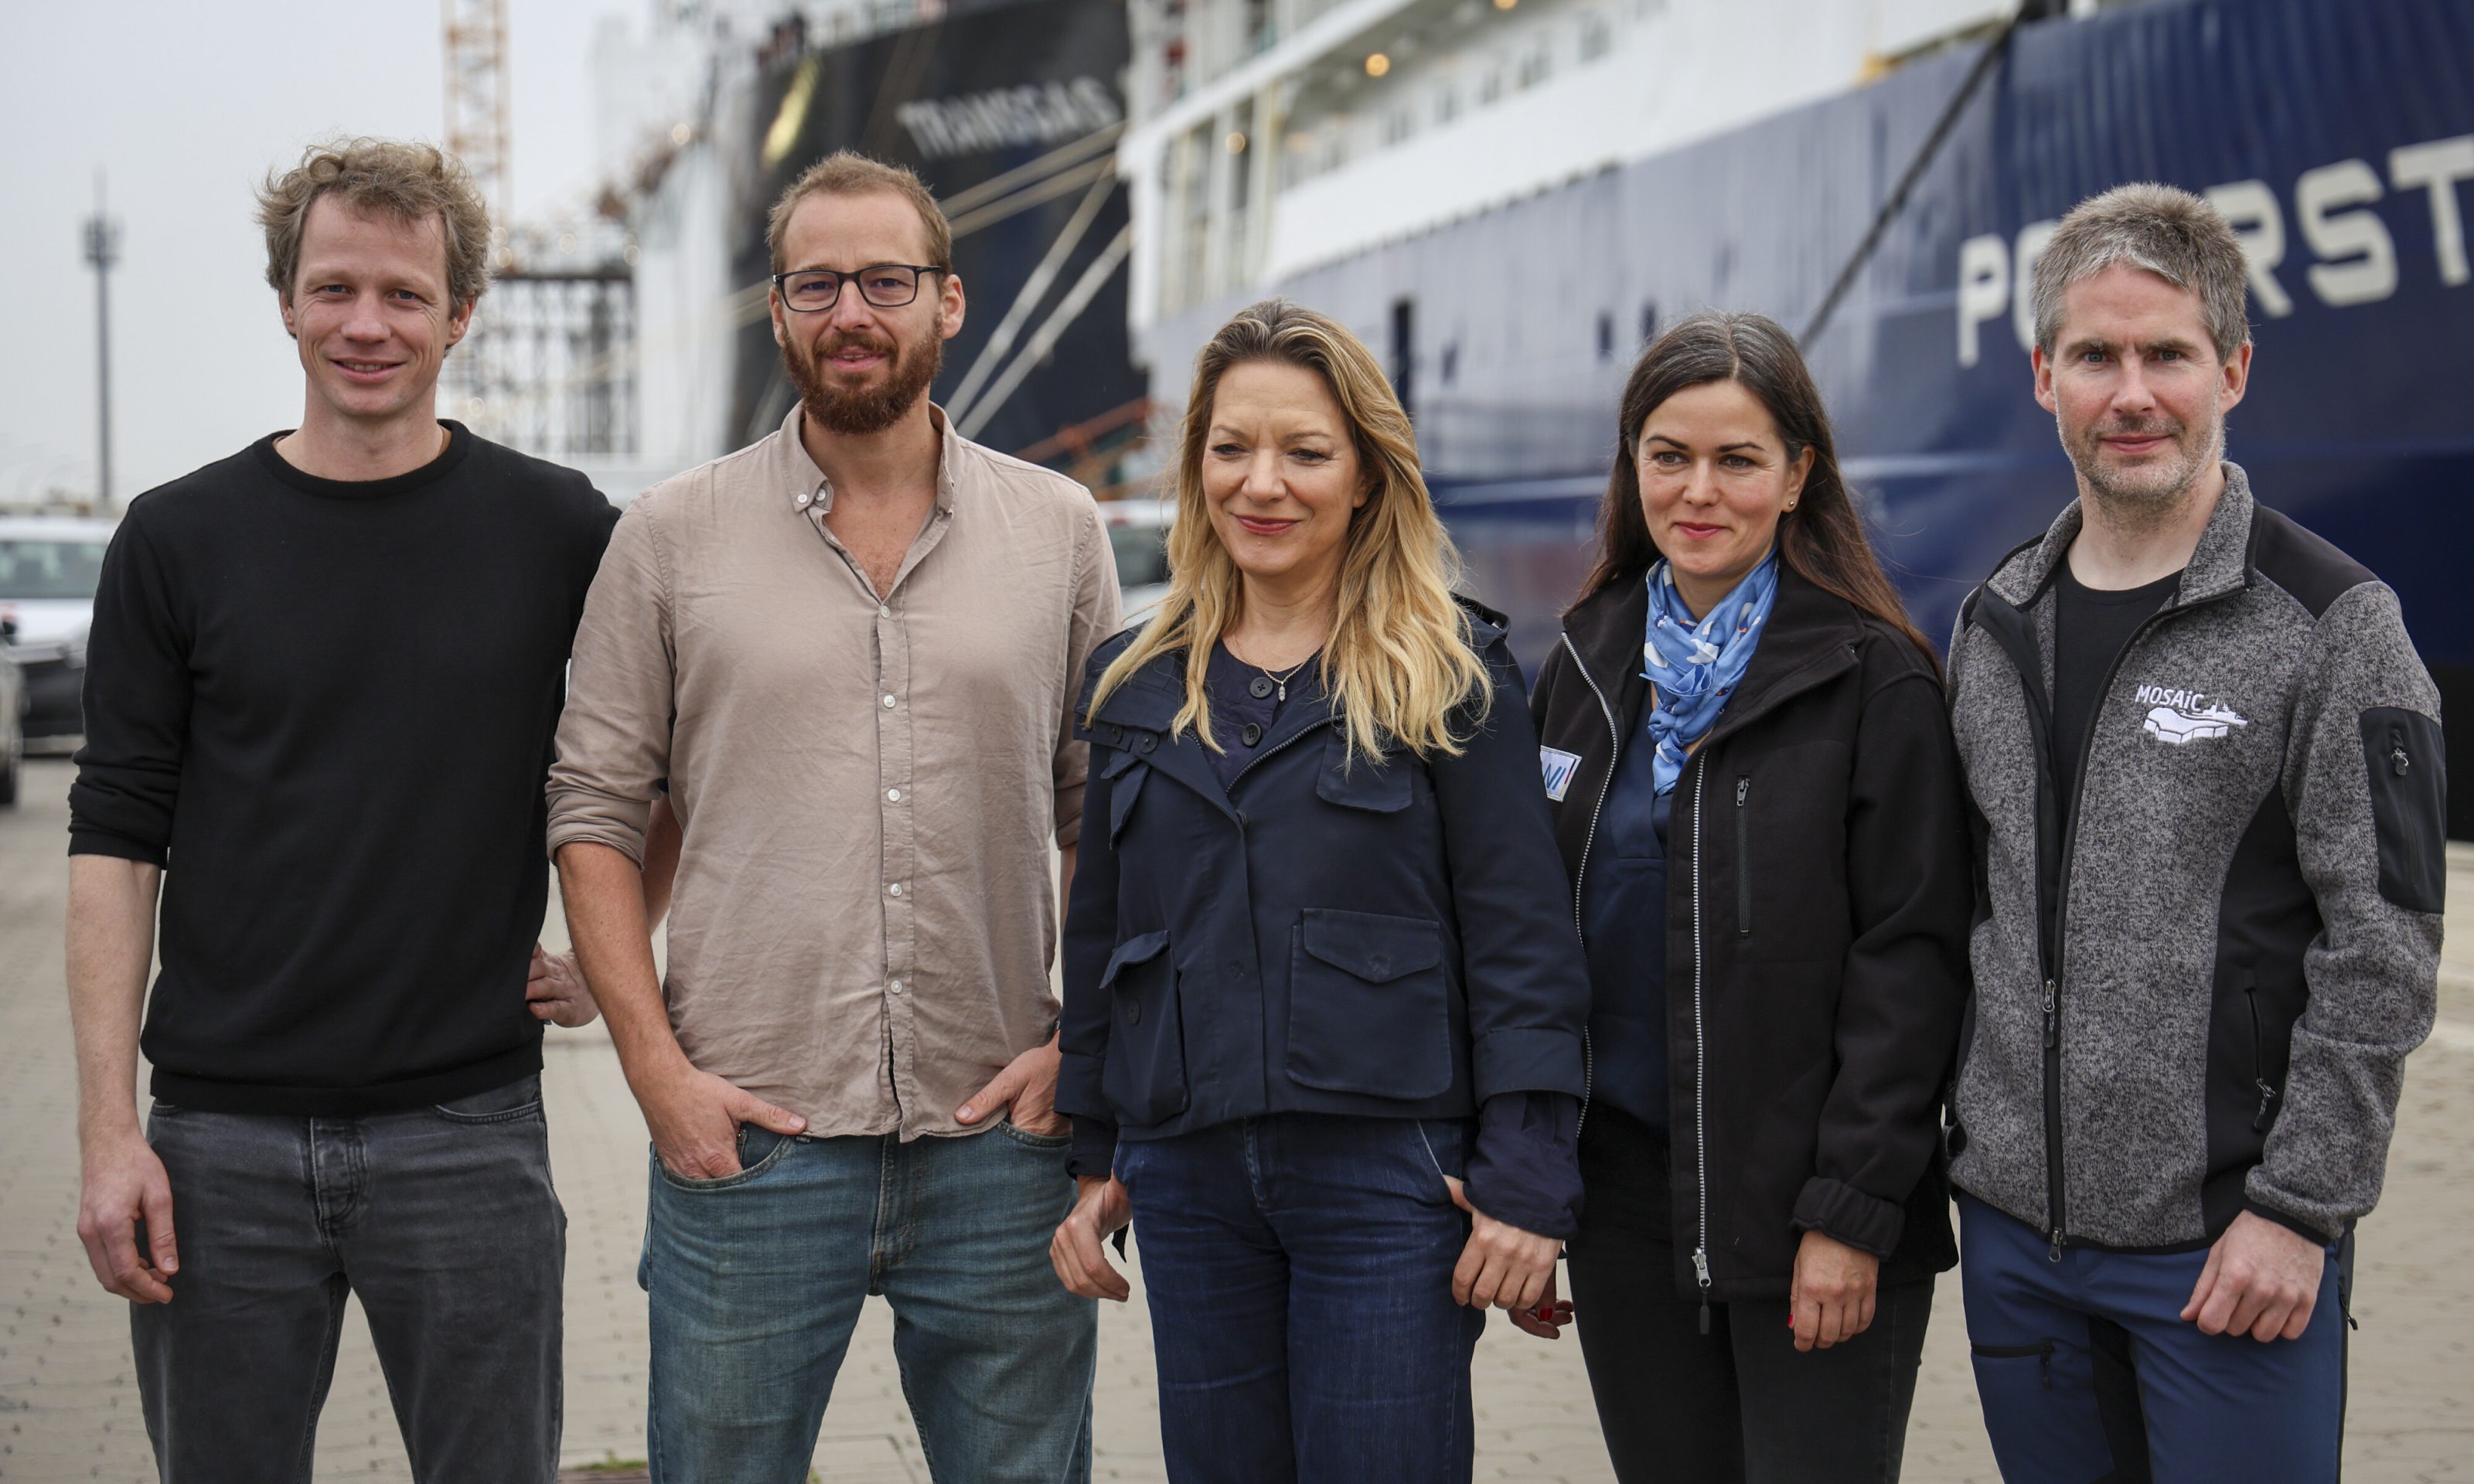 Forschungsschiff Polarstern aus der Arktis zurückgekehrt